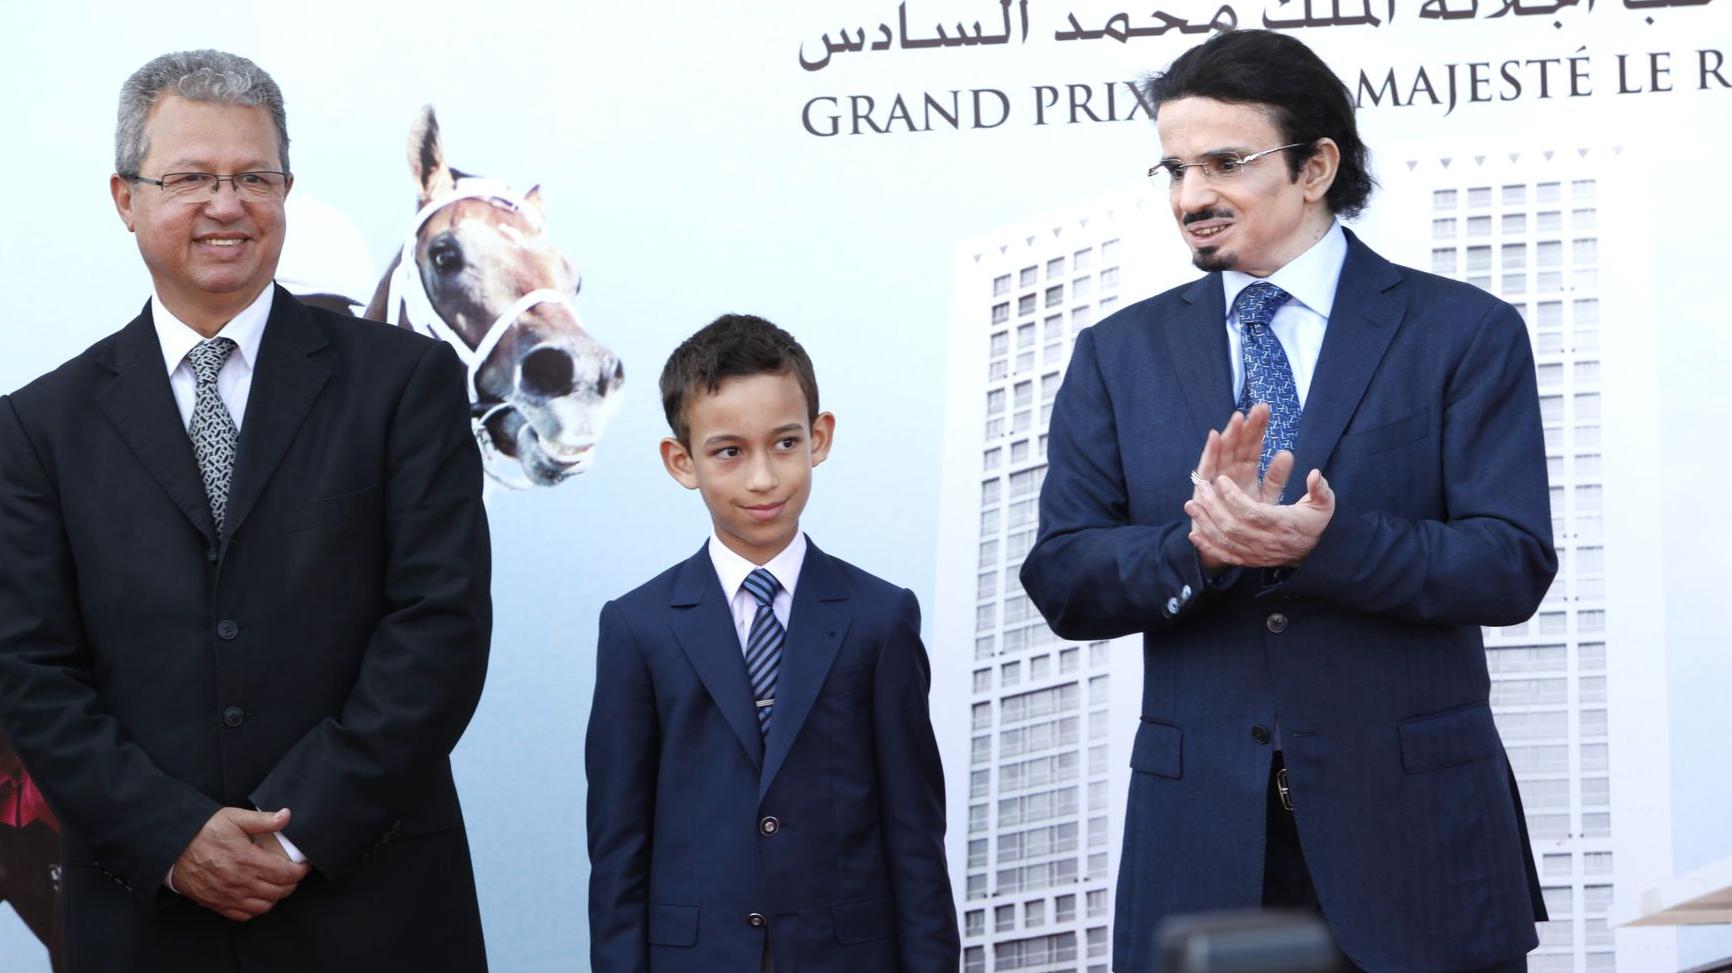 الأمير مولاي الحسن يترأس فعاليات الجائزة الكبرى لصاحب الجلالة الملك محمد السادس
